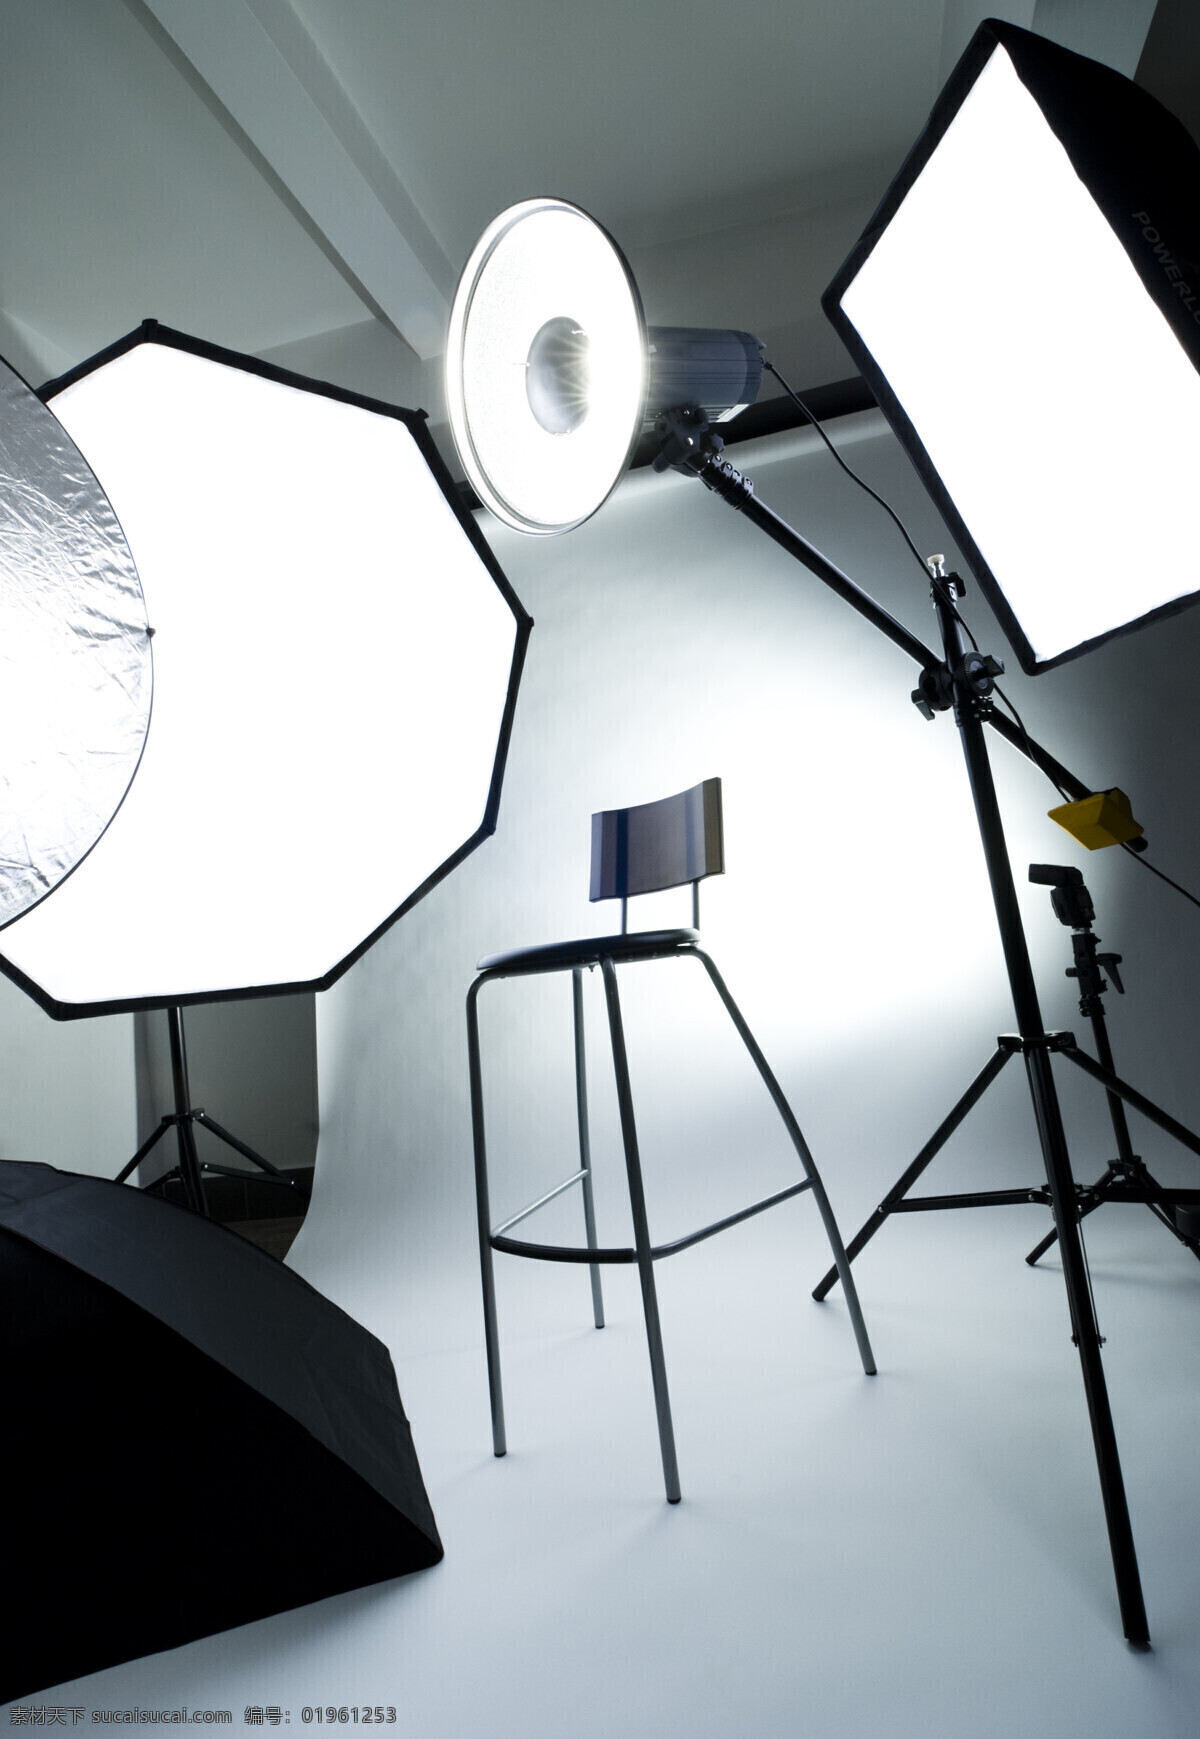 摄影棚 照明 工具 摄影器材 闪光灯 灯具 反光板 照相器材 三角架 室内设计 环境家居